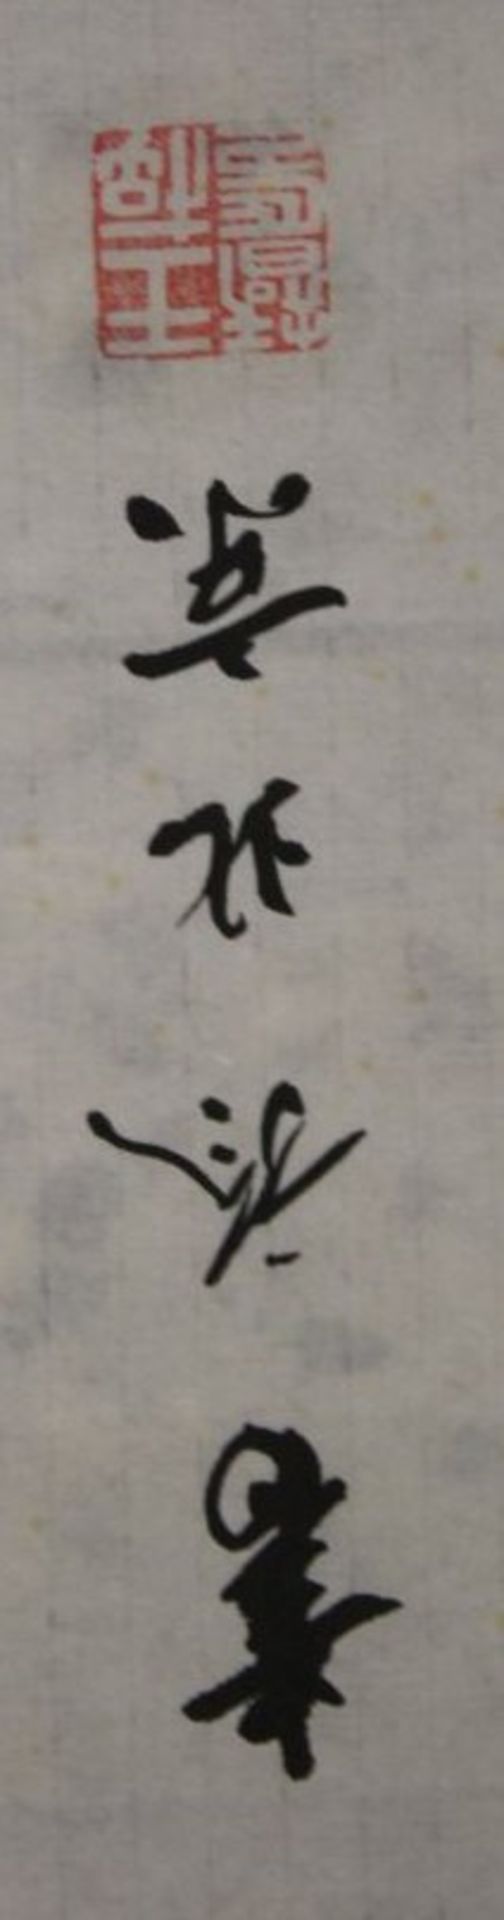 chin. Kaligraphie, ungerahmt, Blatt mit Läsuren, 67 x 34cm. - Bild 3 aus 4